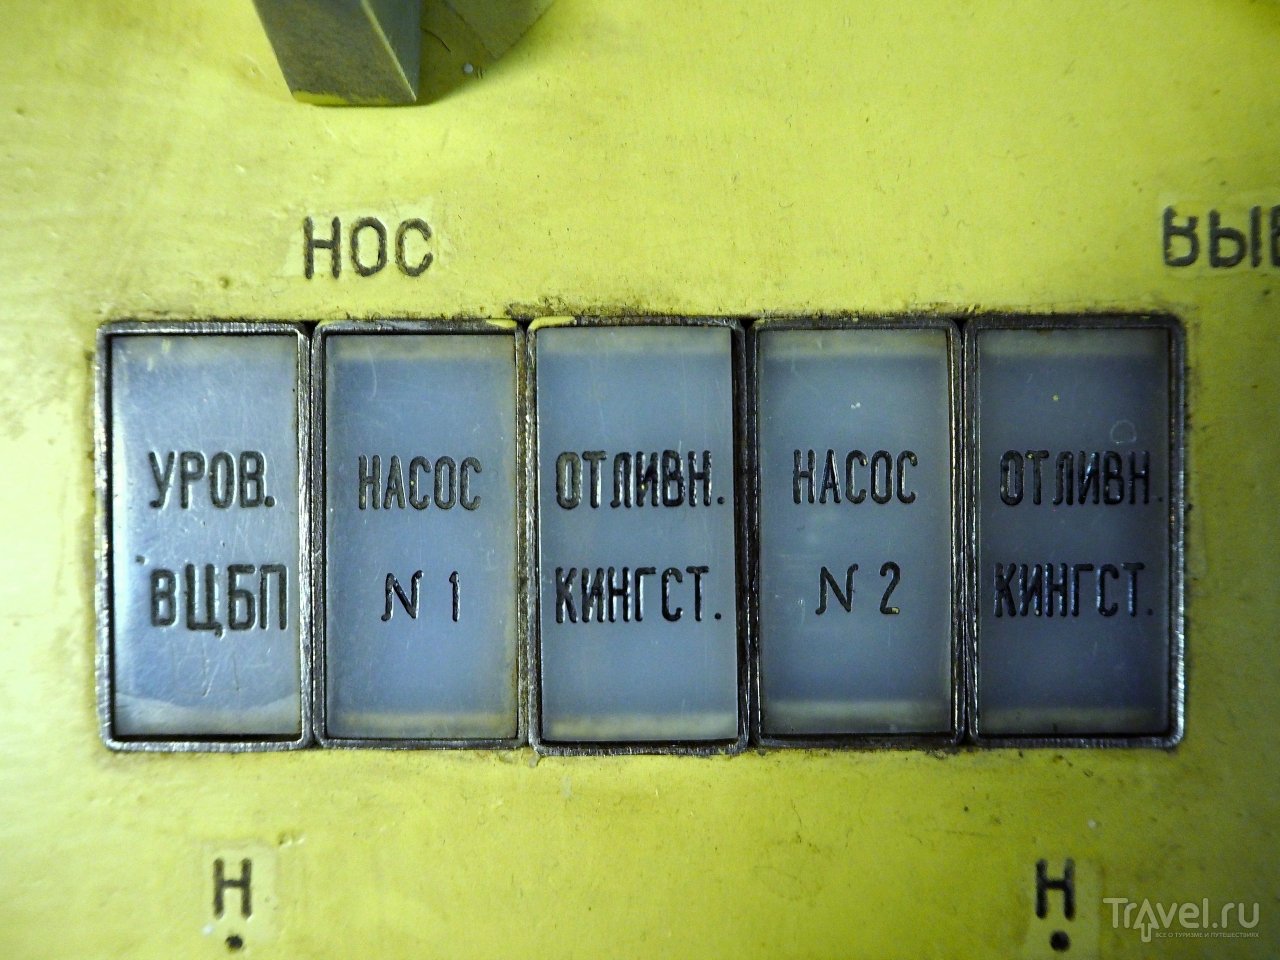 Музей Подводной лодки Б-396 / Россия